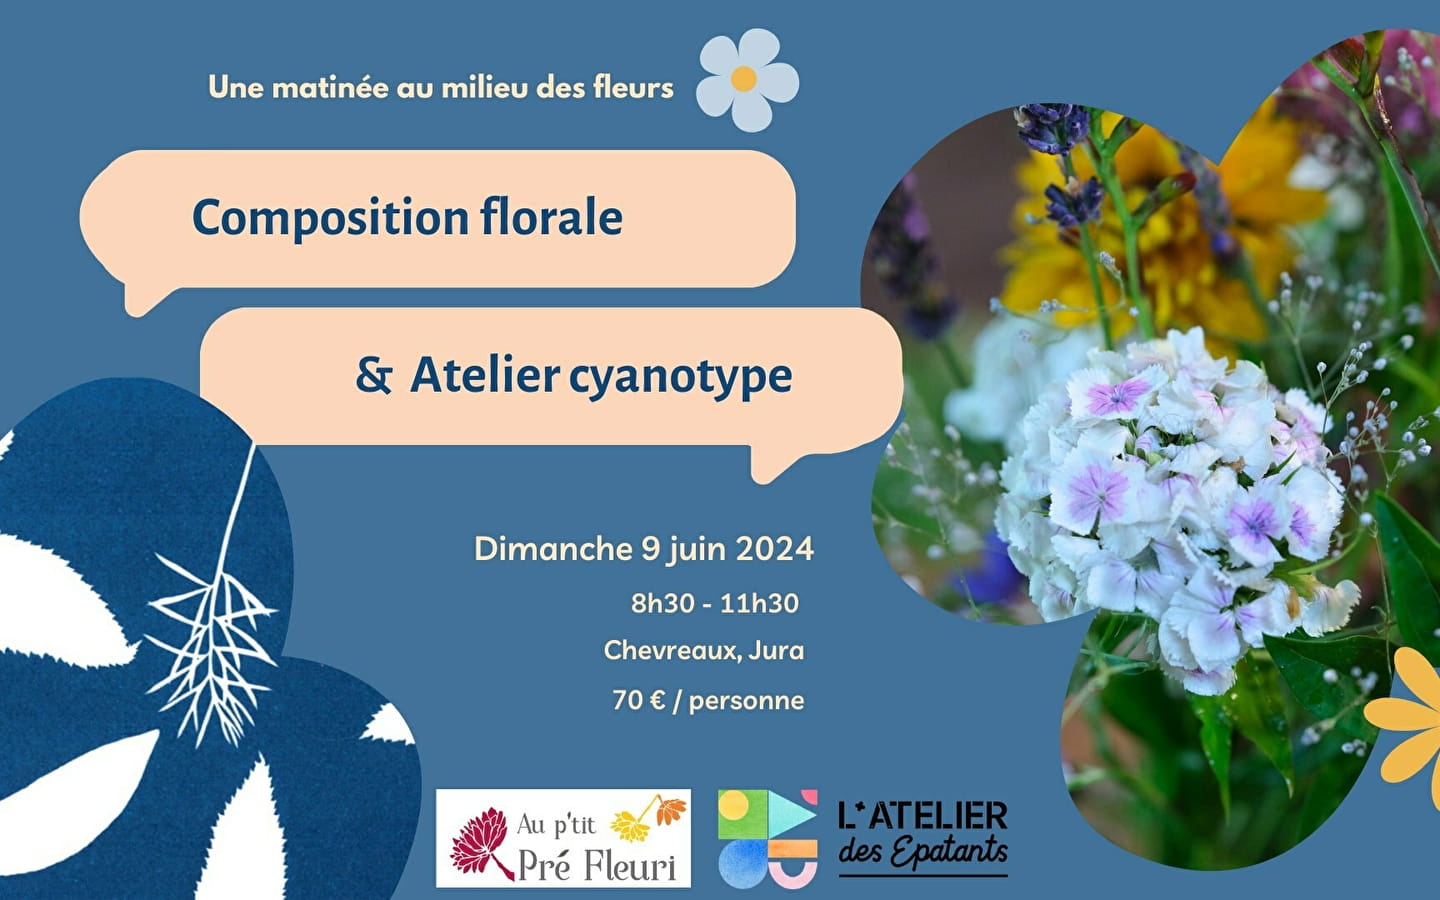 Ateliers - compositions florales & cyanotype au P'tit Pré Fleuri